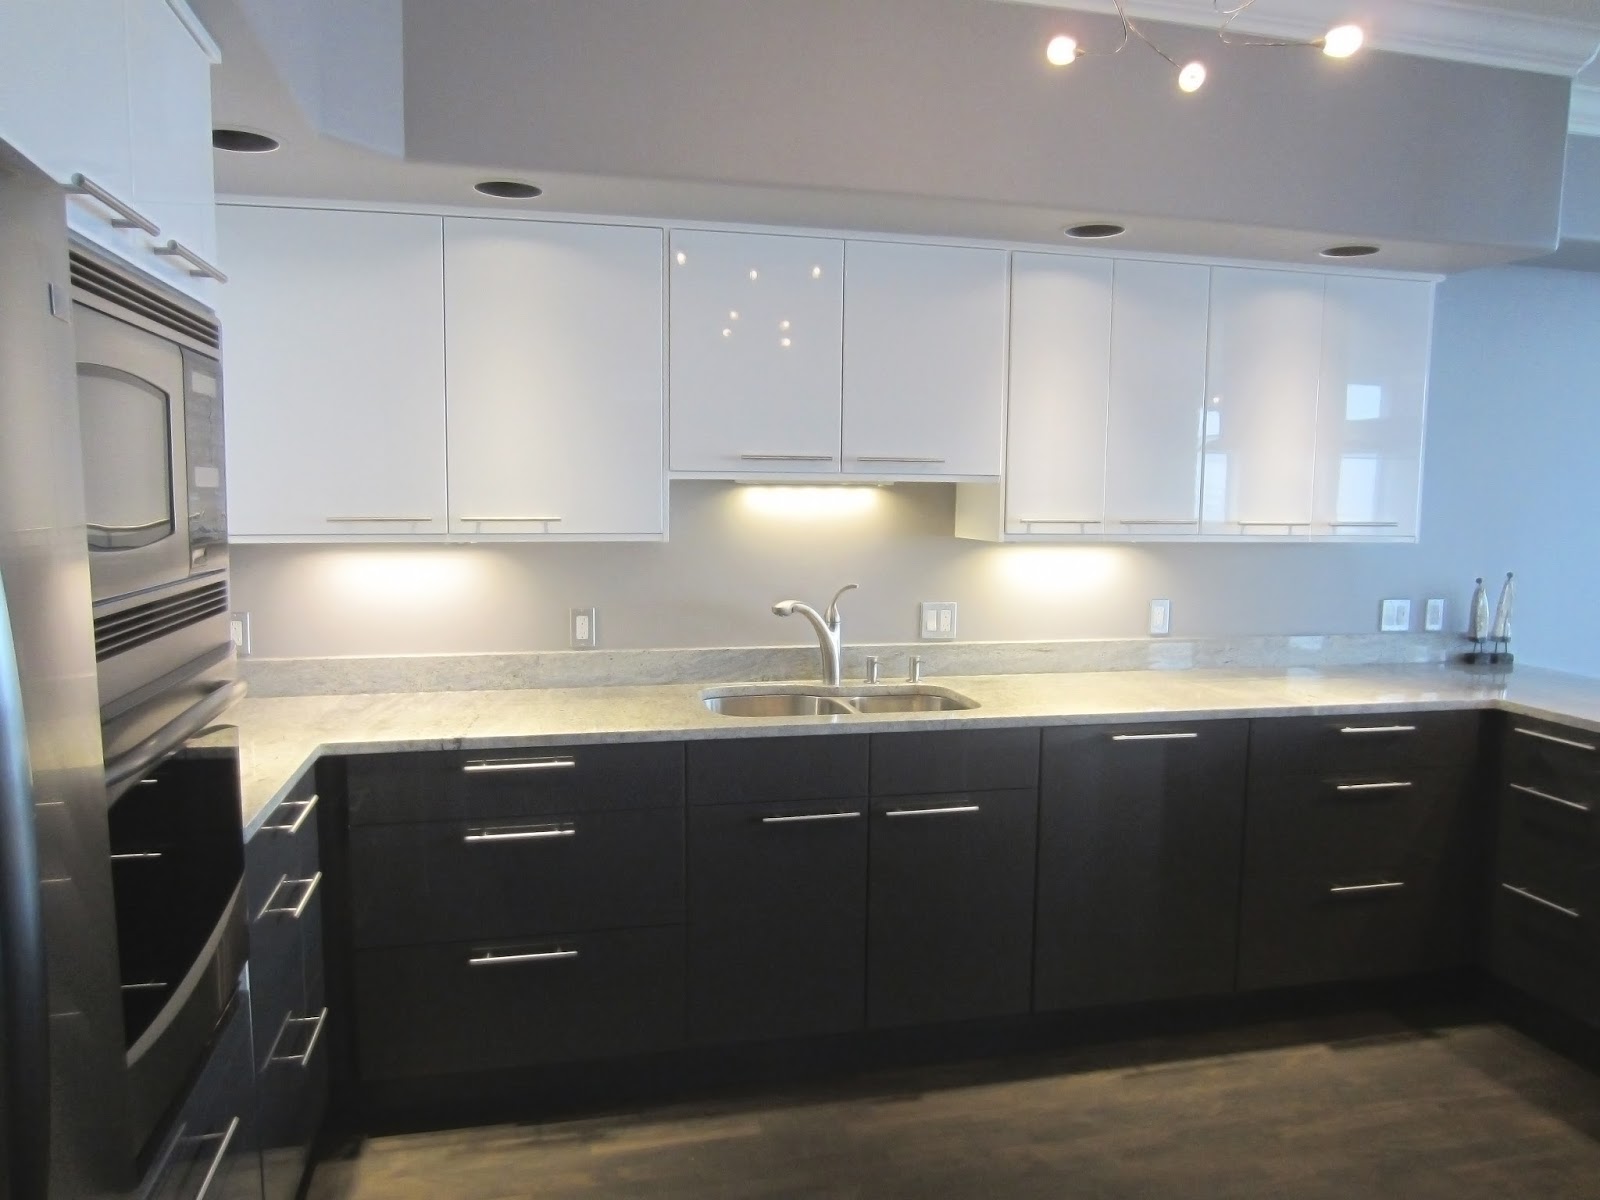  Ikea  Kitchen  Cabinets for Amazing Kitchen  Design In Kitchen 